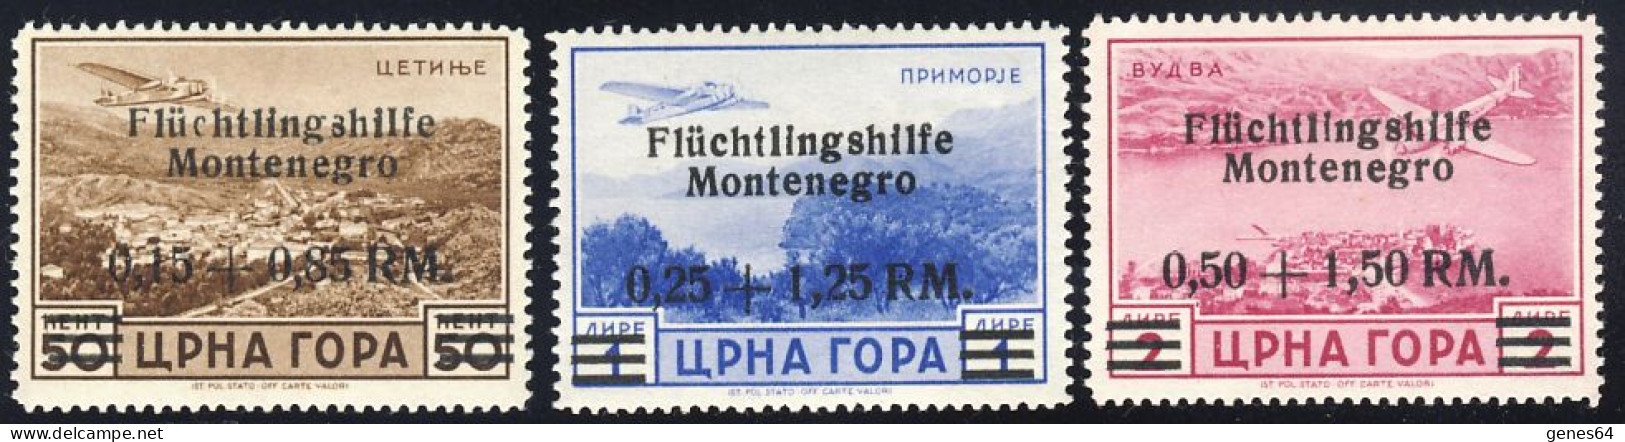 1943 - Emissione Di Cettigne  - Posta Aerea Serie Completa -  Nuovi Linguellati (2 Immagini) - Occ. Allemande: Montenegro